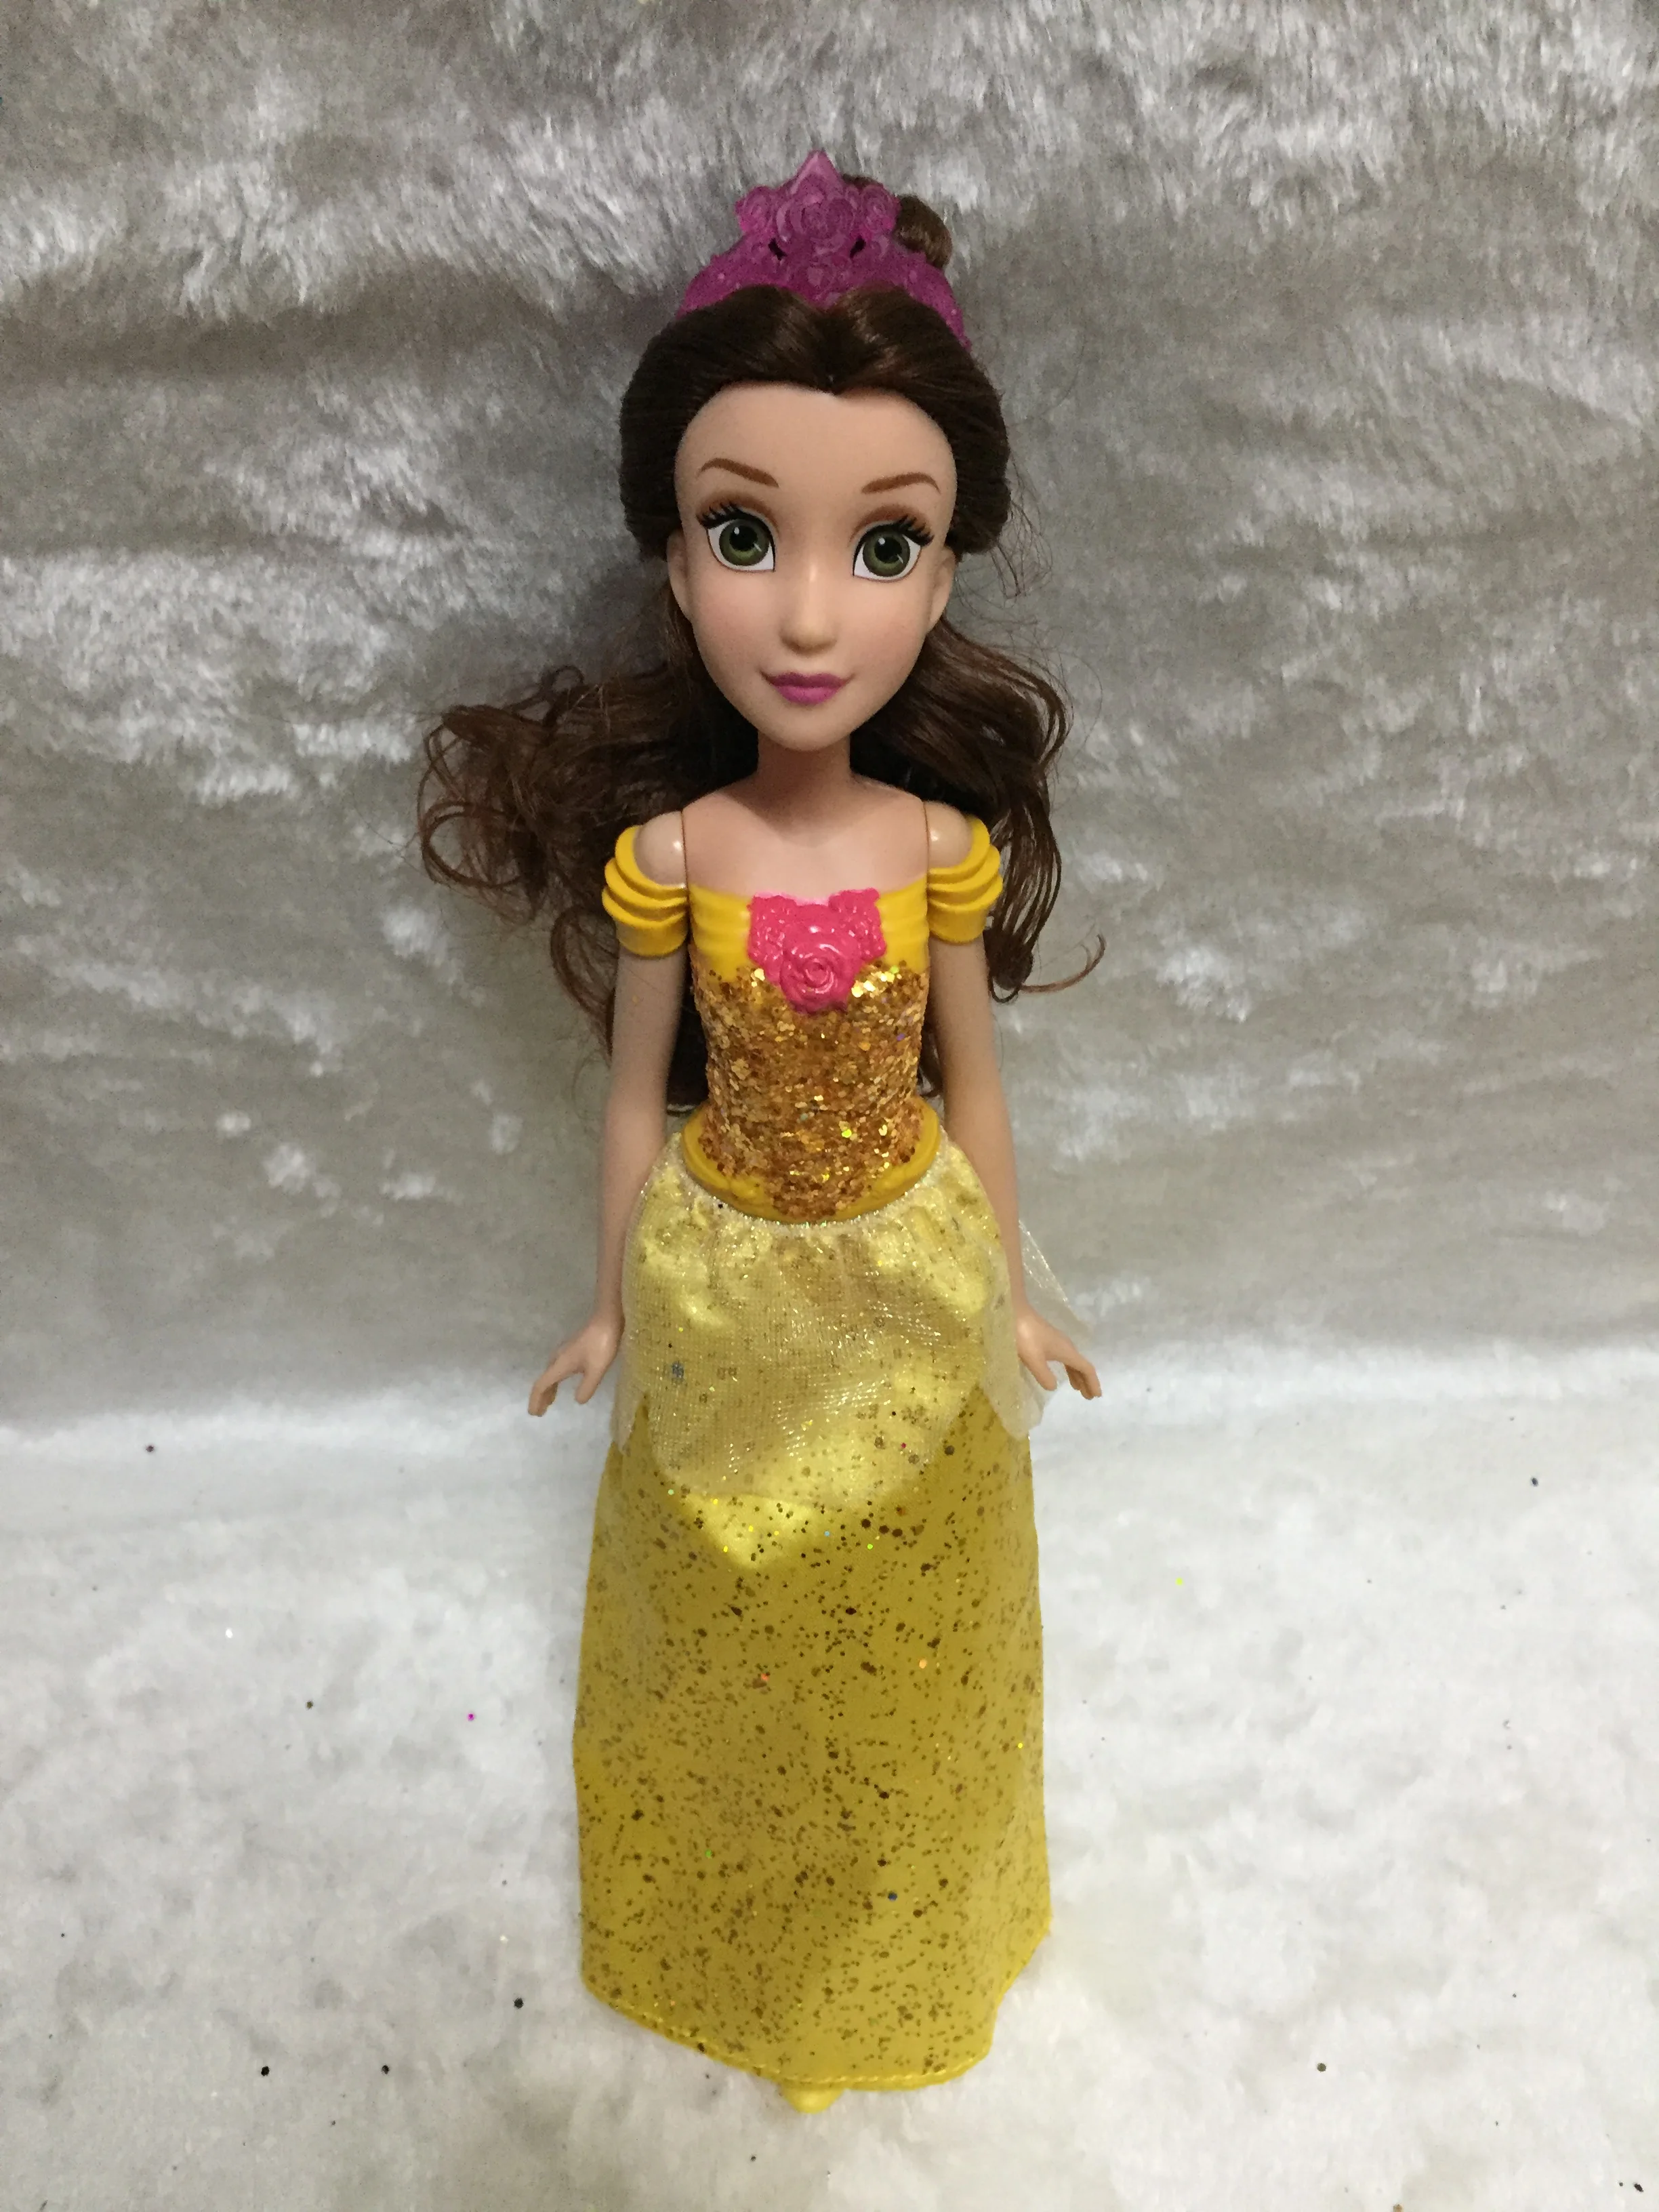 Куклы-Рапунцель Принцесса Жасмин кукла Белоснежка Ариэль Белль Рапунцель Игрушки для девочек игрушки bjd куклы для детей - Цвет: belle